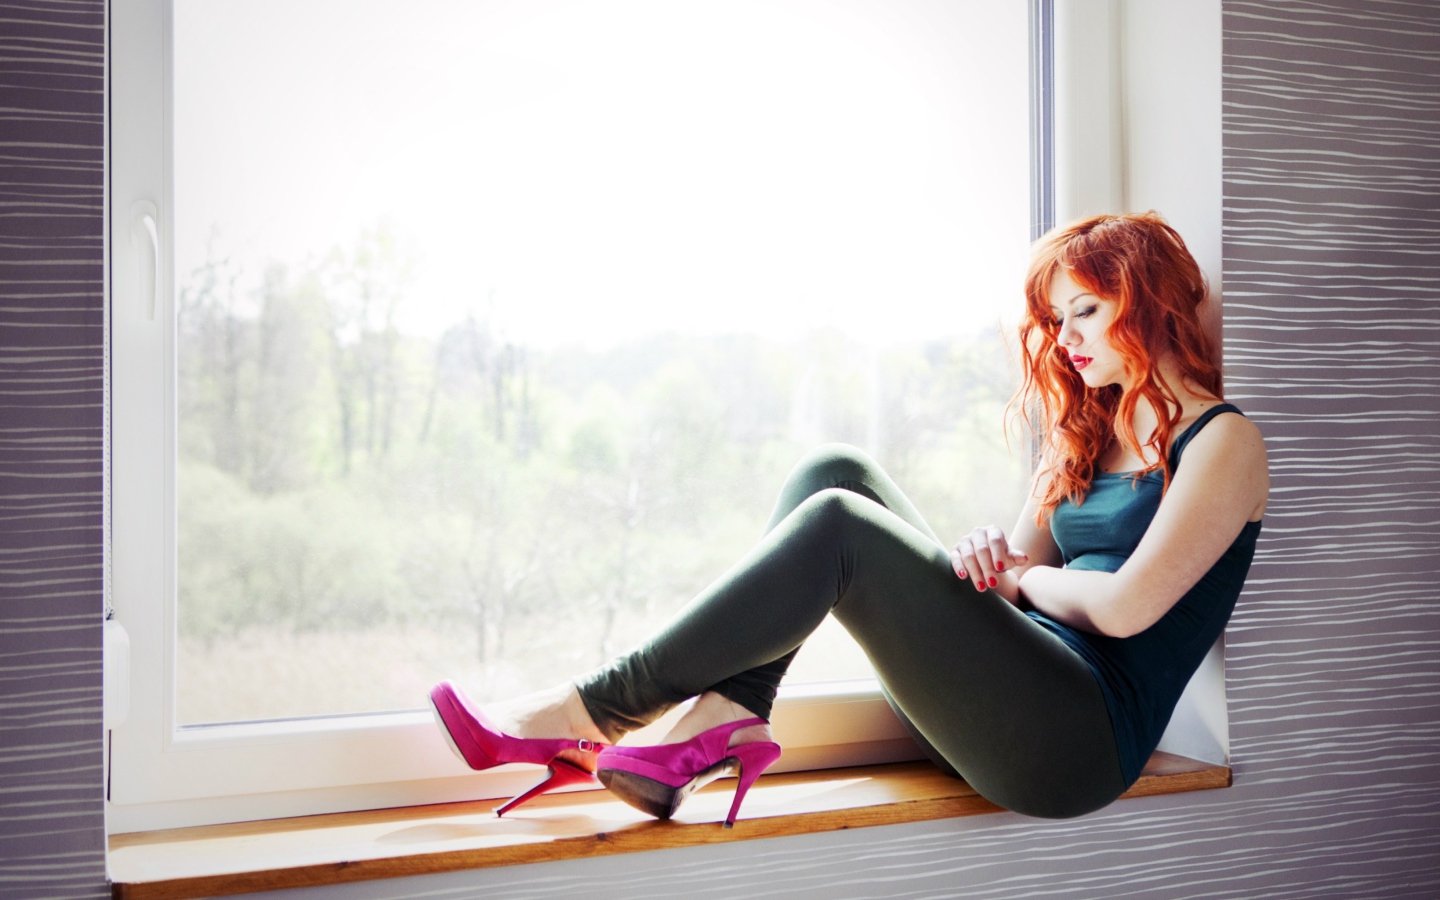 Обои Beautiful Redhead Model And Window 1440x900